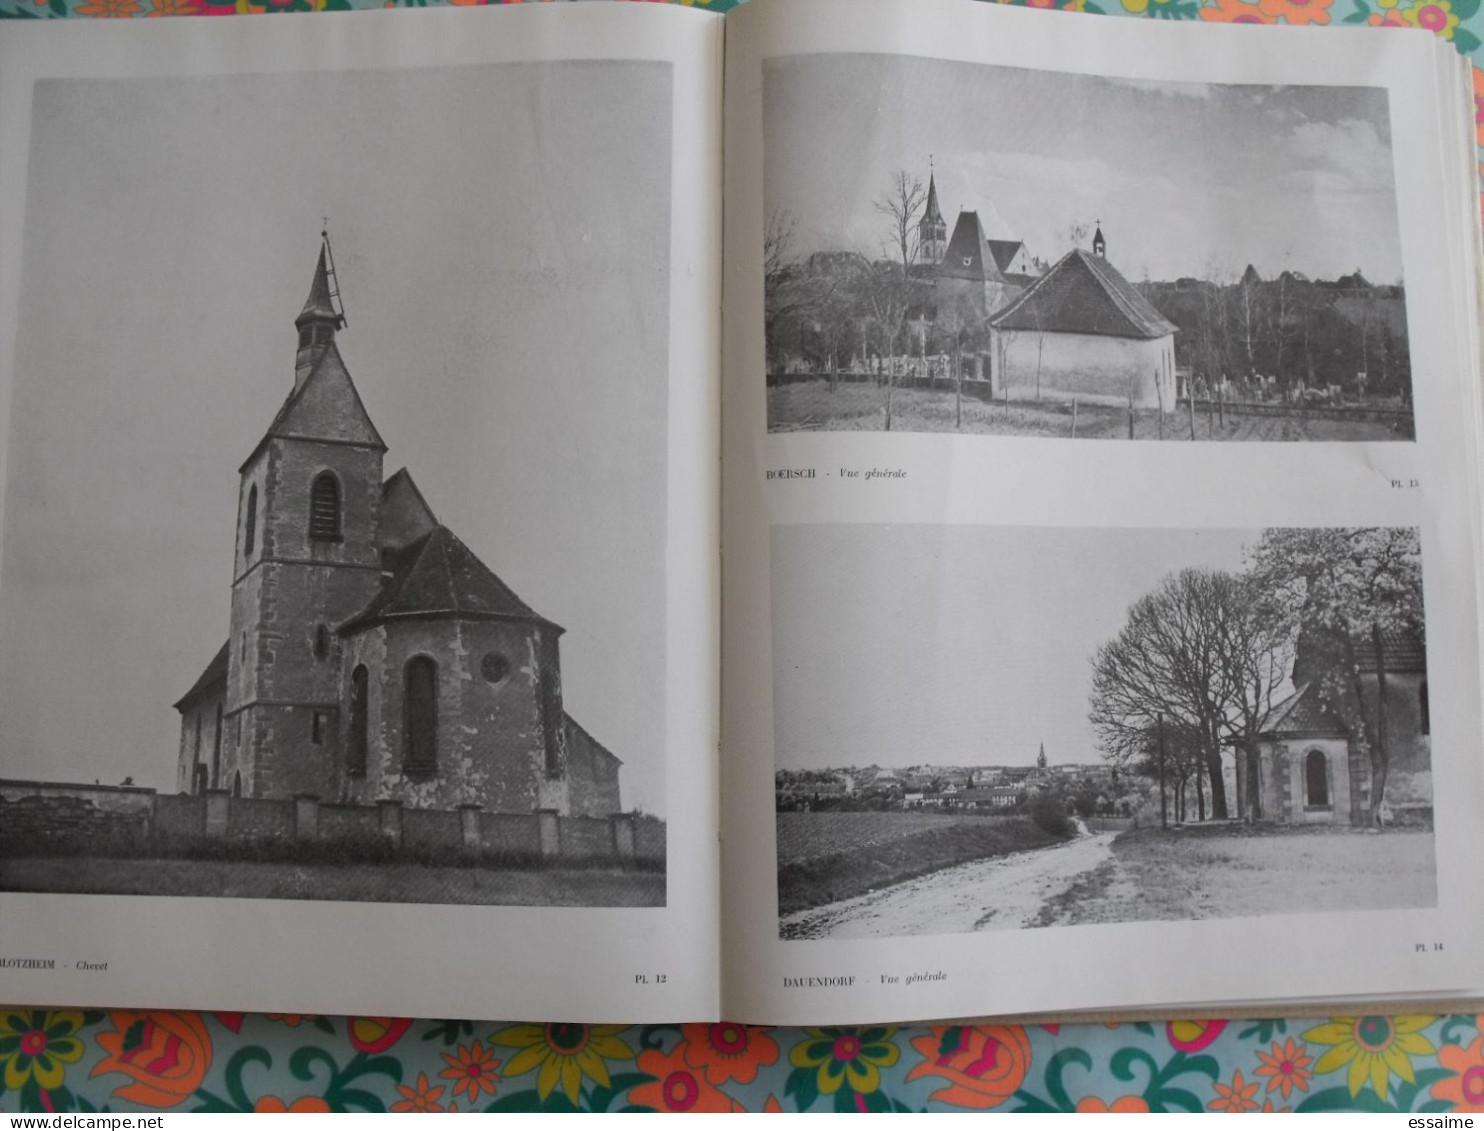 pèlerinages alsaciens de la vierge Marie. Alsace. éd. du Drakkar, Strasbourg 1954. nombreuses photos.